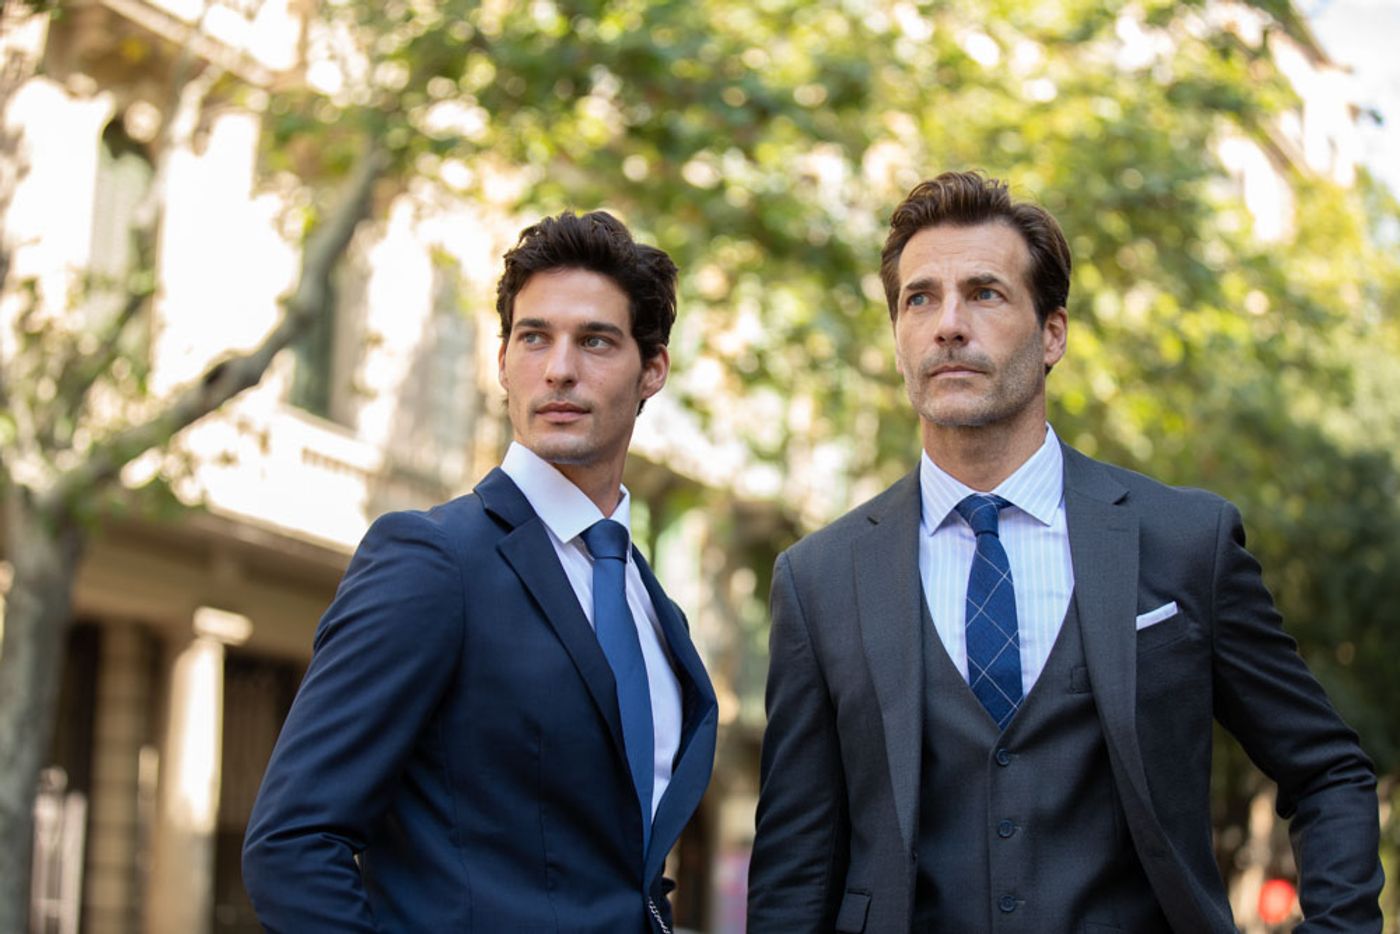 20 Best Suit Brands for Men 